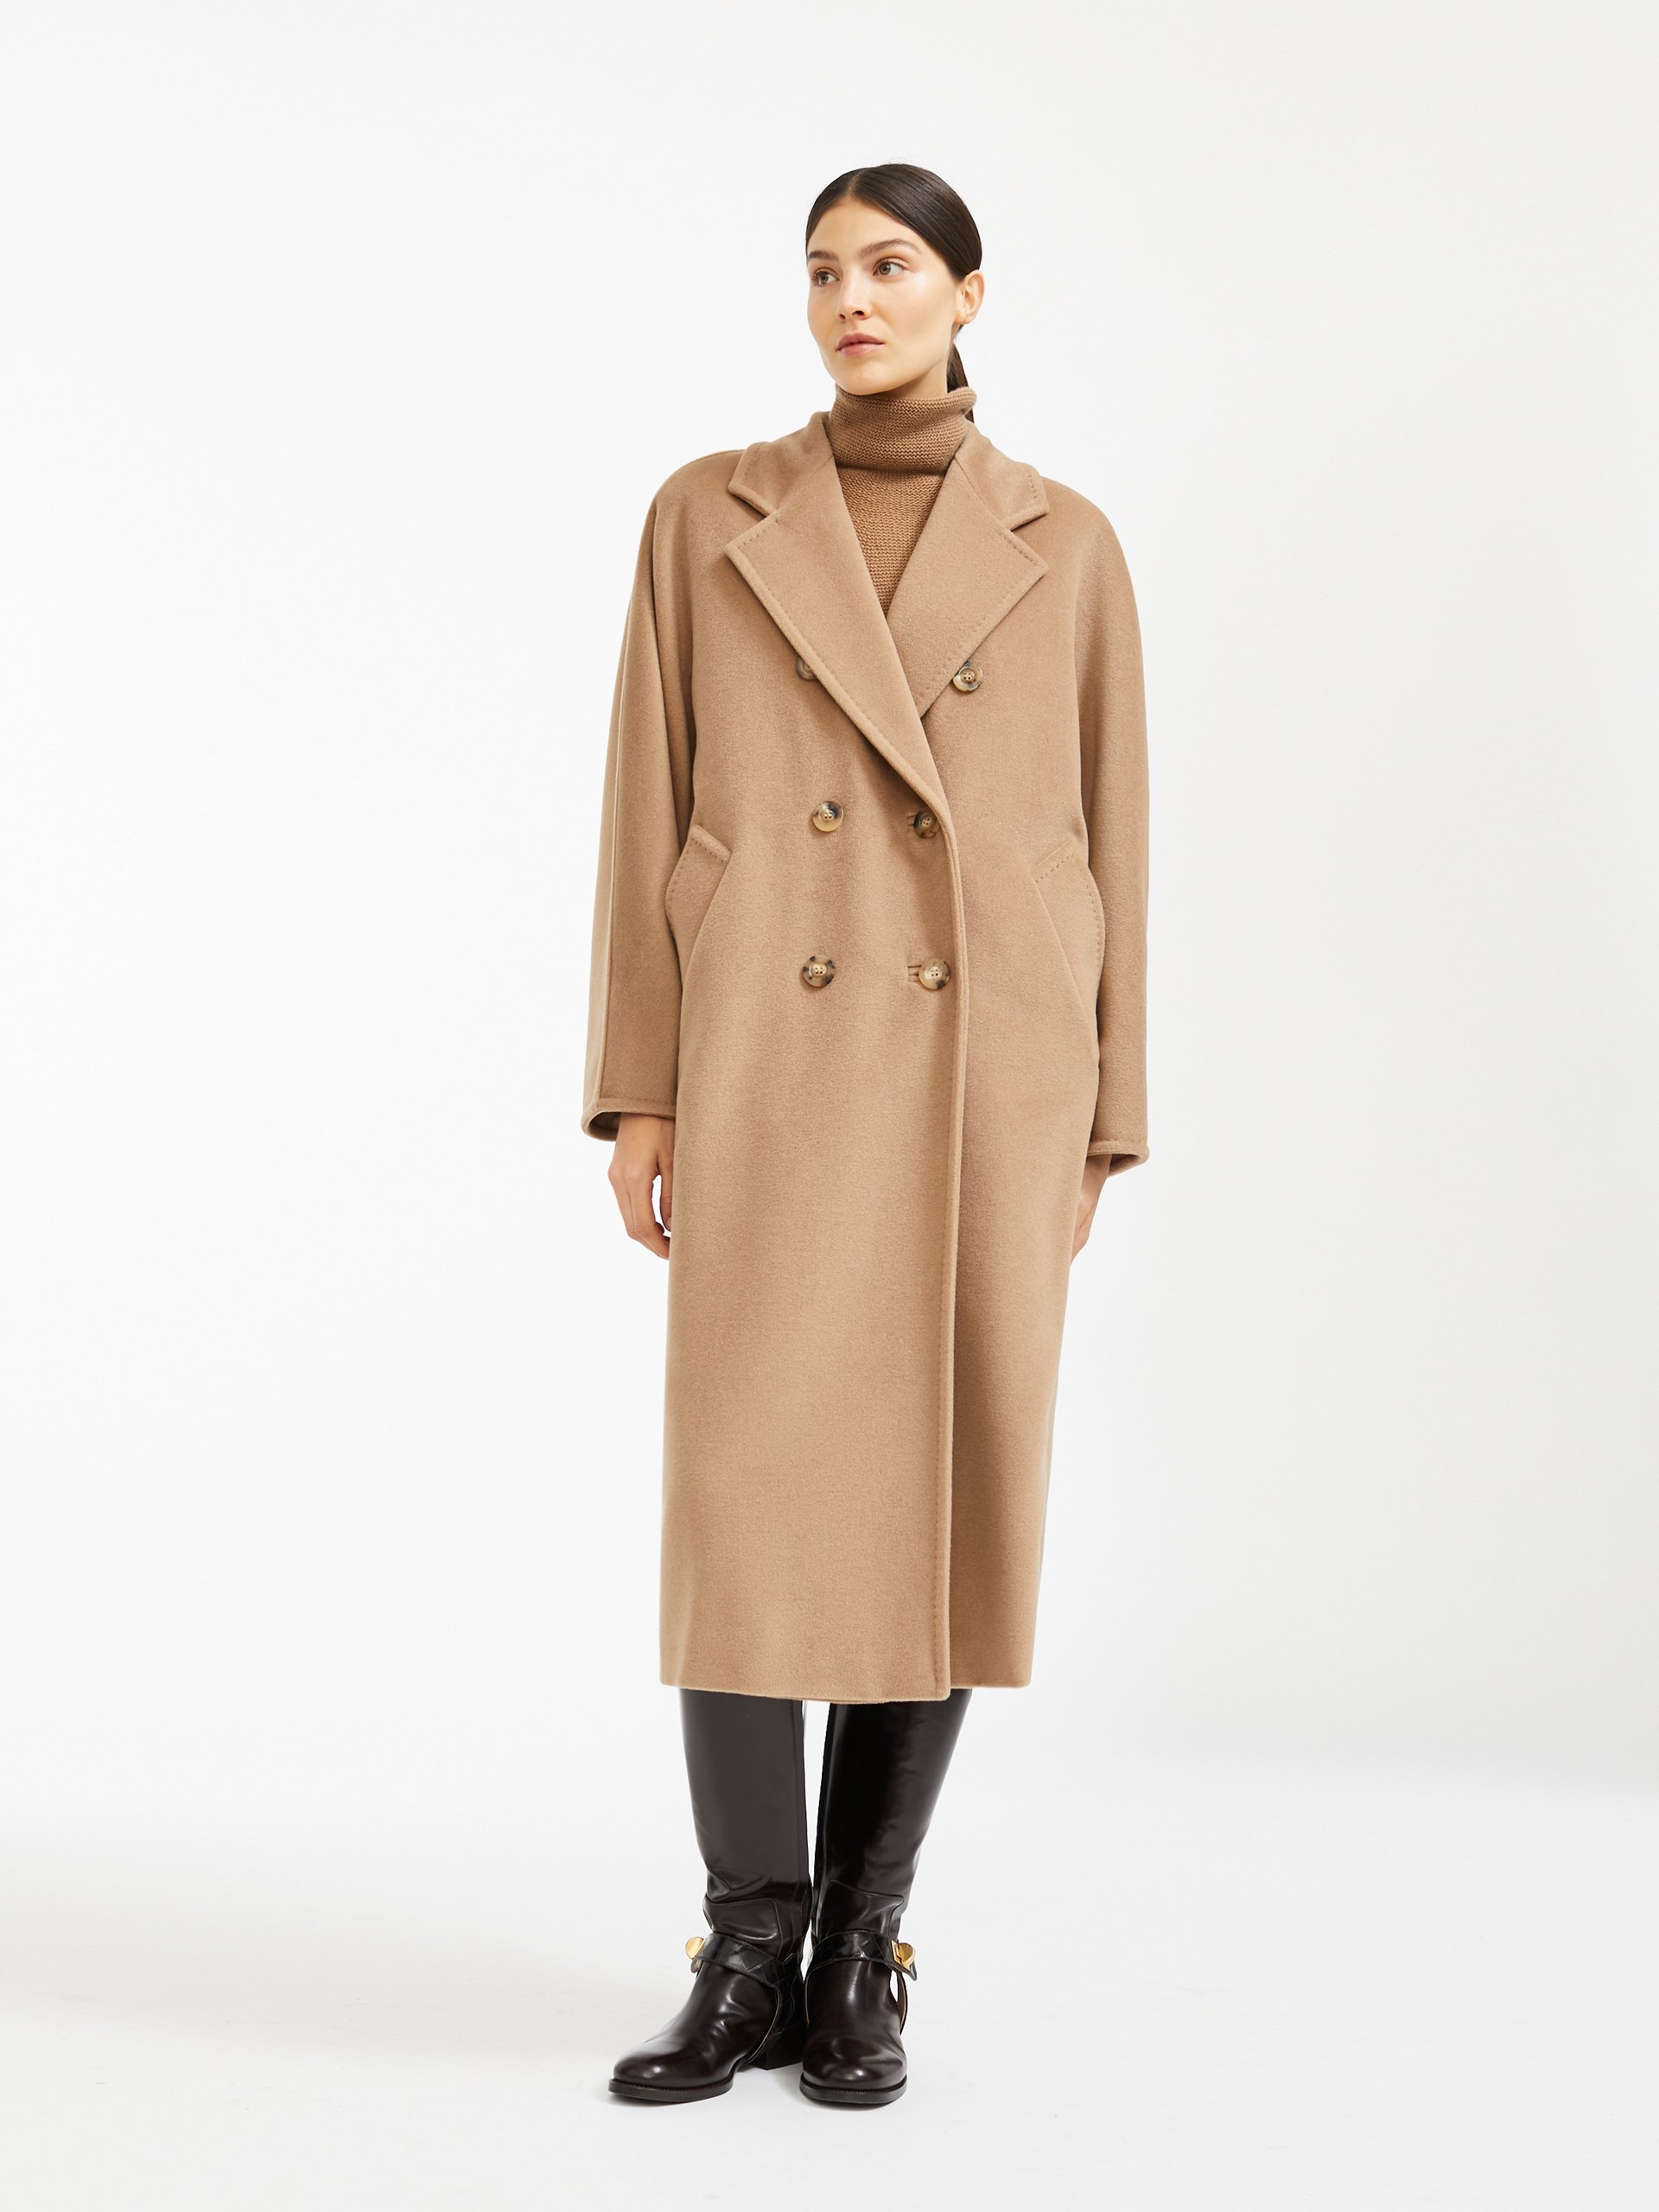 Max Mara cappotto modello 101801 inverno 2021 colore cammello - Lei Trendy